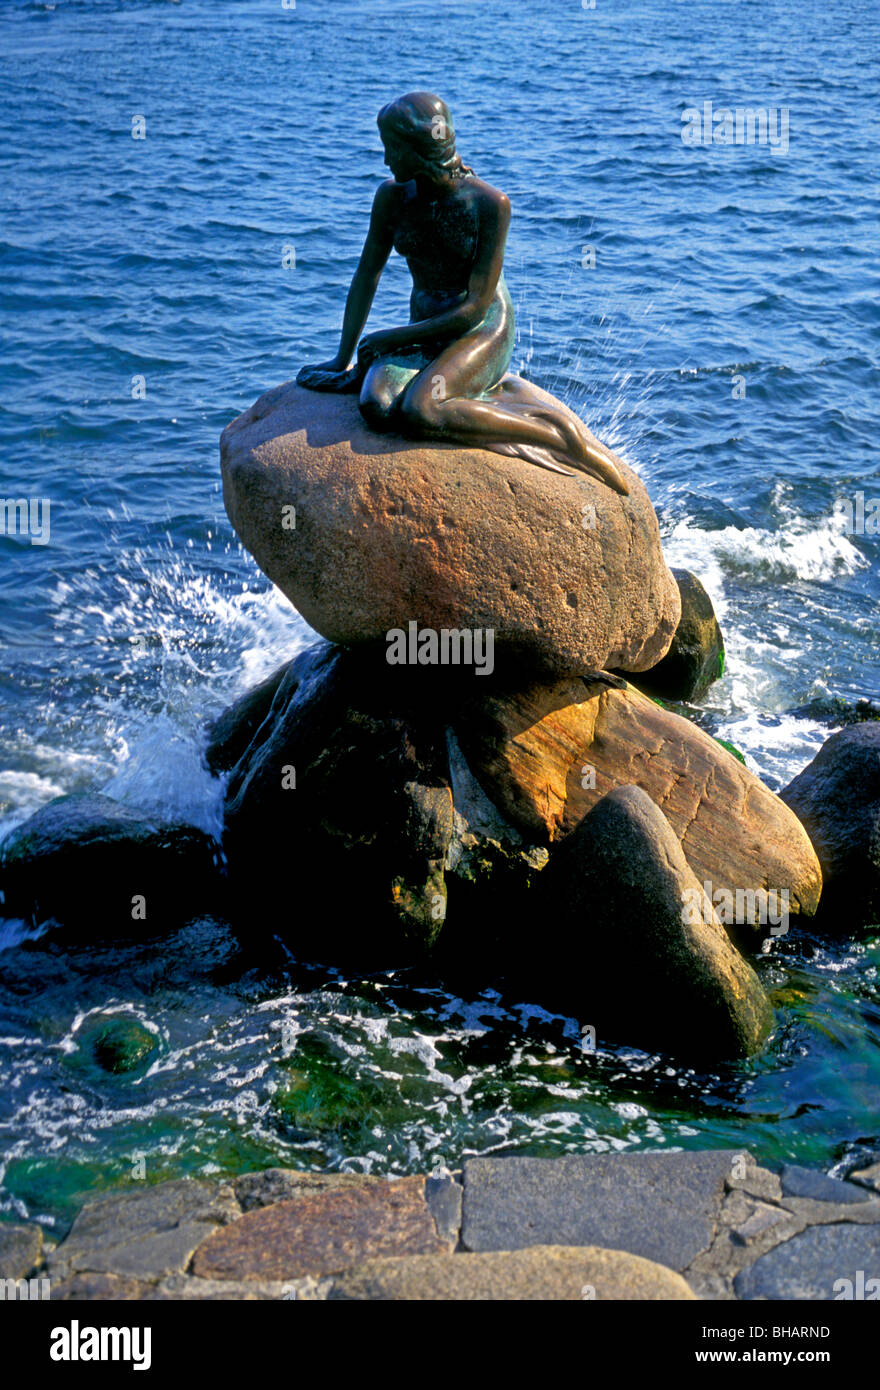 Petite Sirène, lille havfrue, statue de bronze, conçu par le sculpteur danois Edvard Eriksen, ville de Copenhague, Danemark Banque D'Images